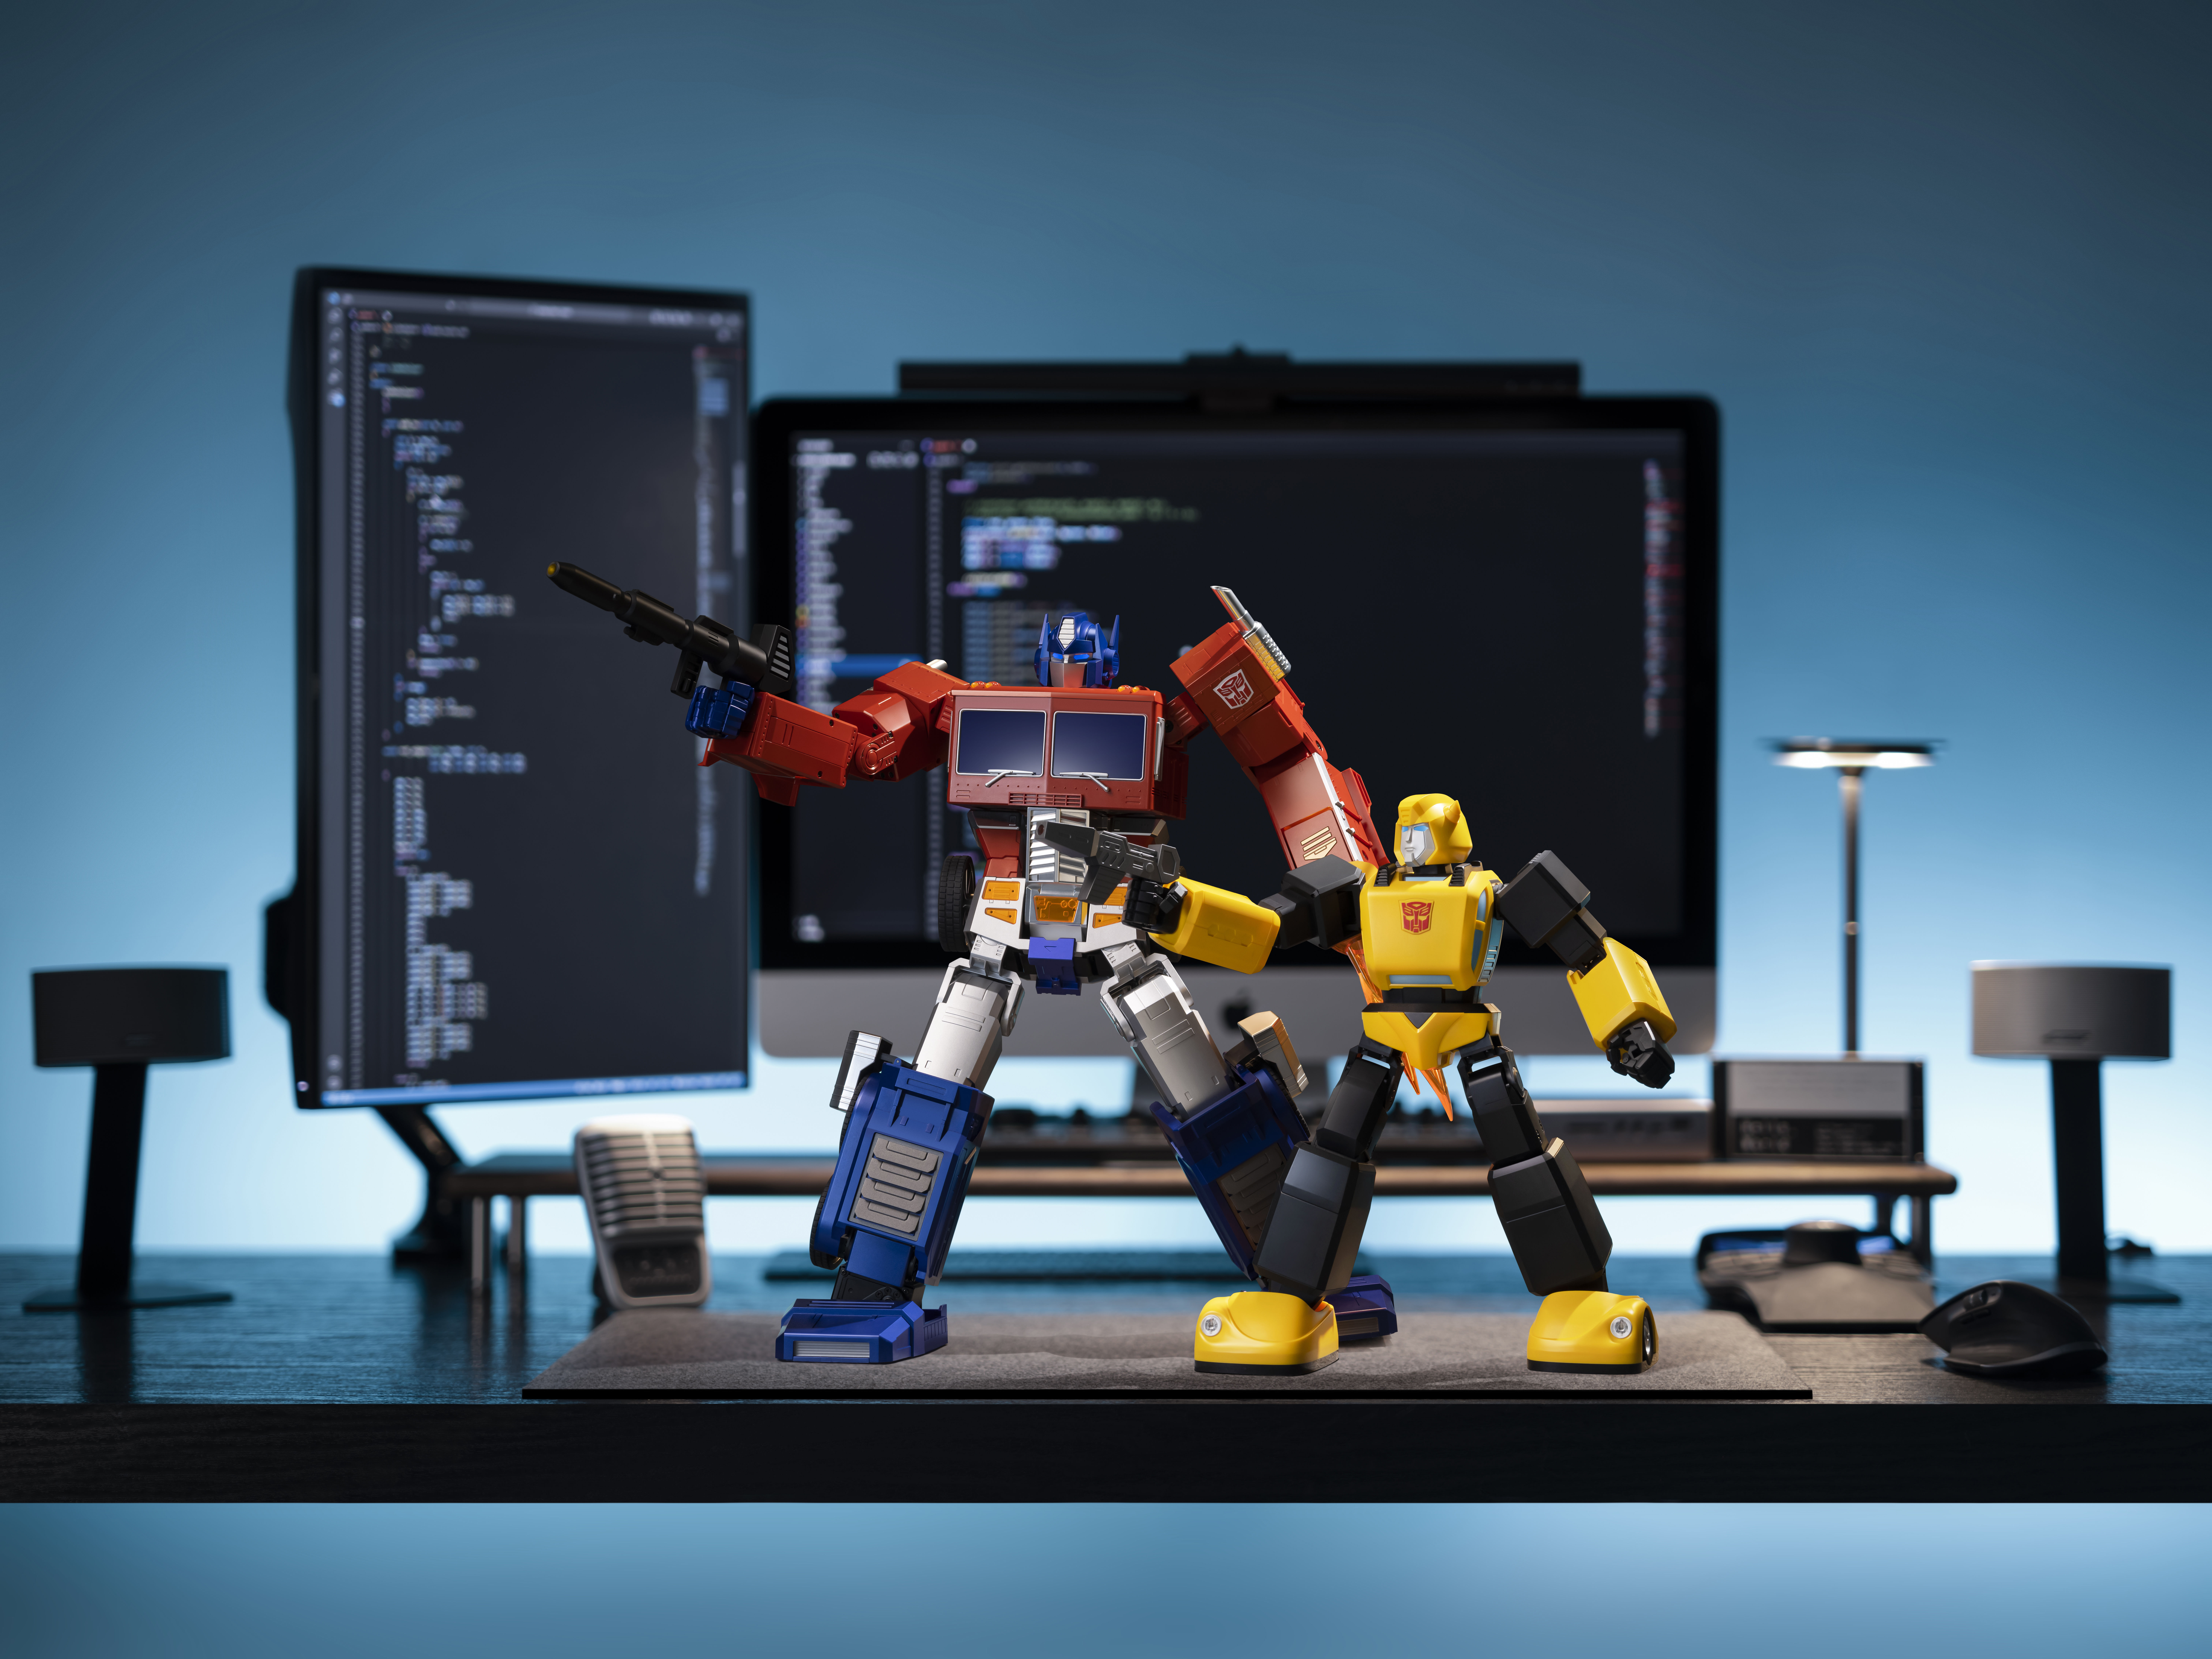 Robosen Robotics Announces G1 Transformers Bumblebee Robot 